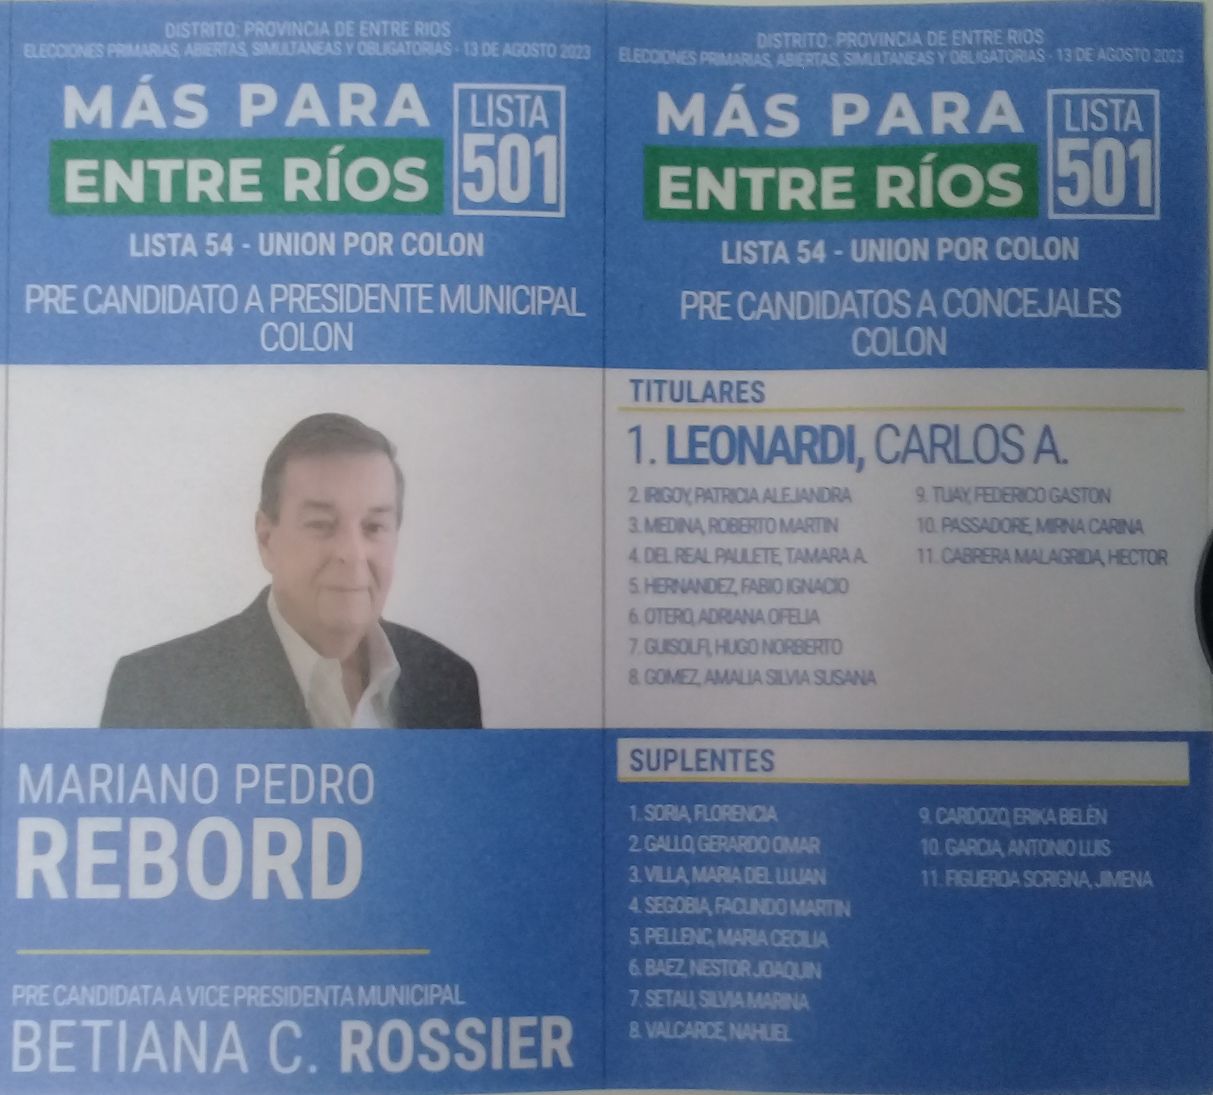 Lista 501: Más Para Entre Ríos - Mariano Pedro Rebord.